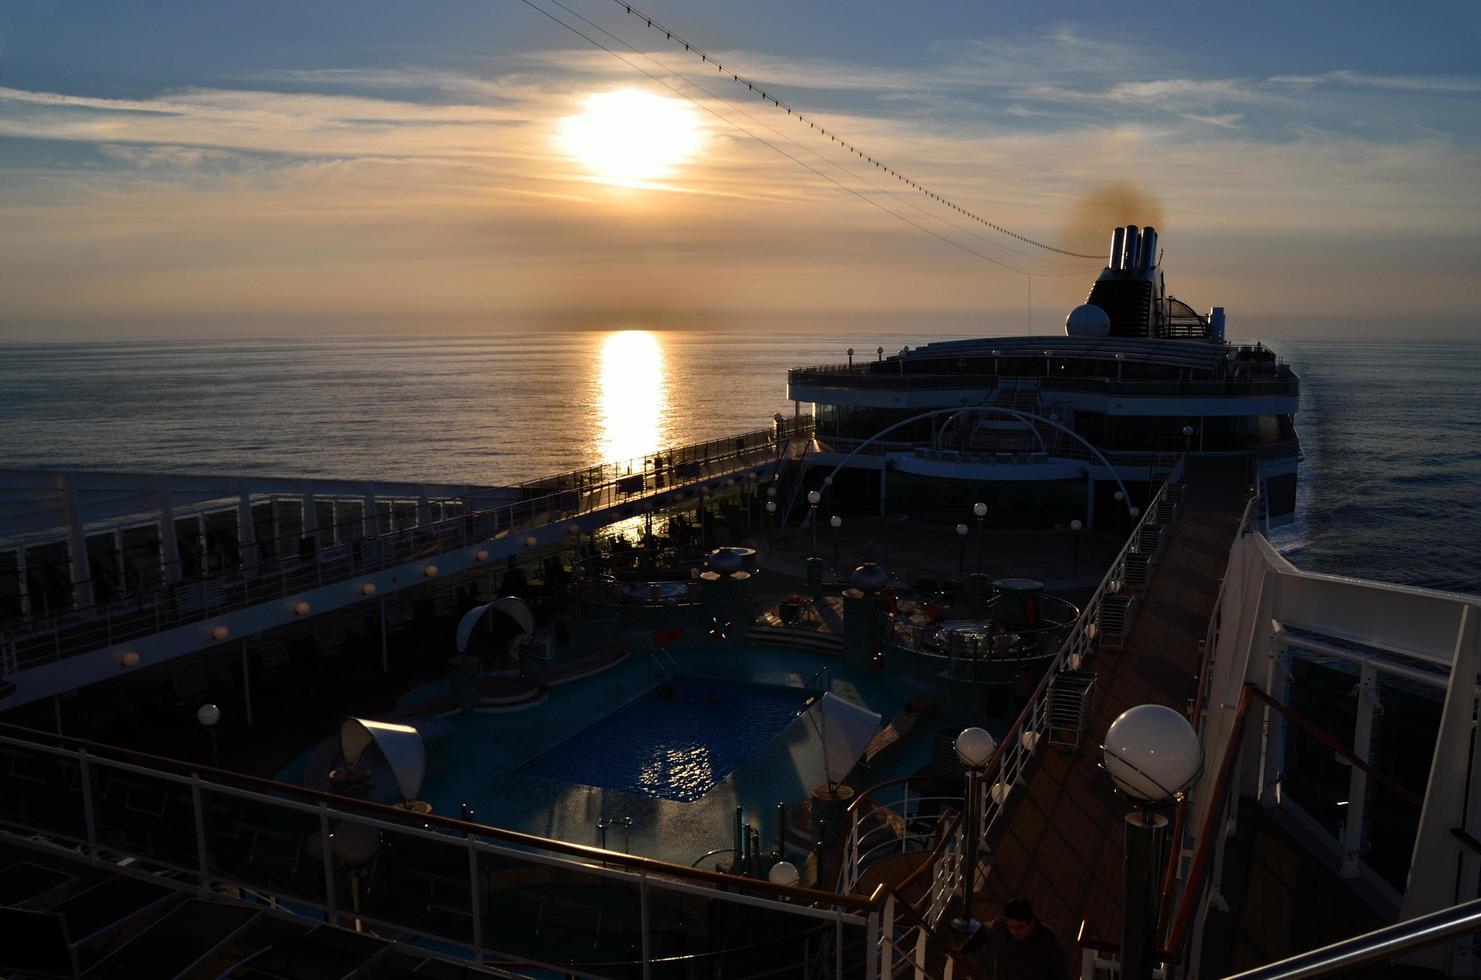 pôr do sol à noite no navio de cruzeiro foto